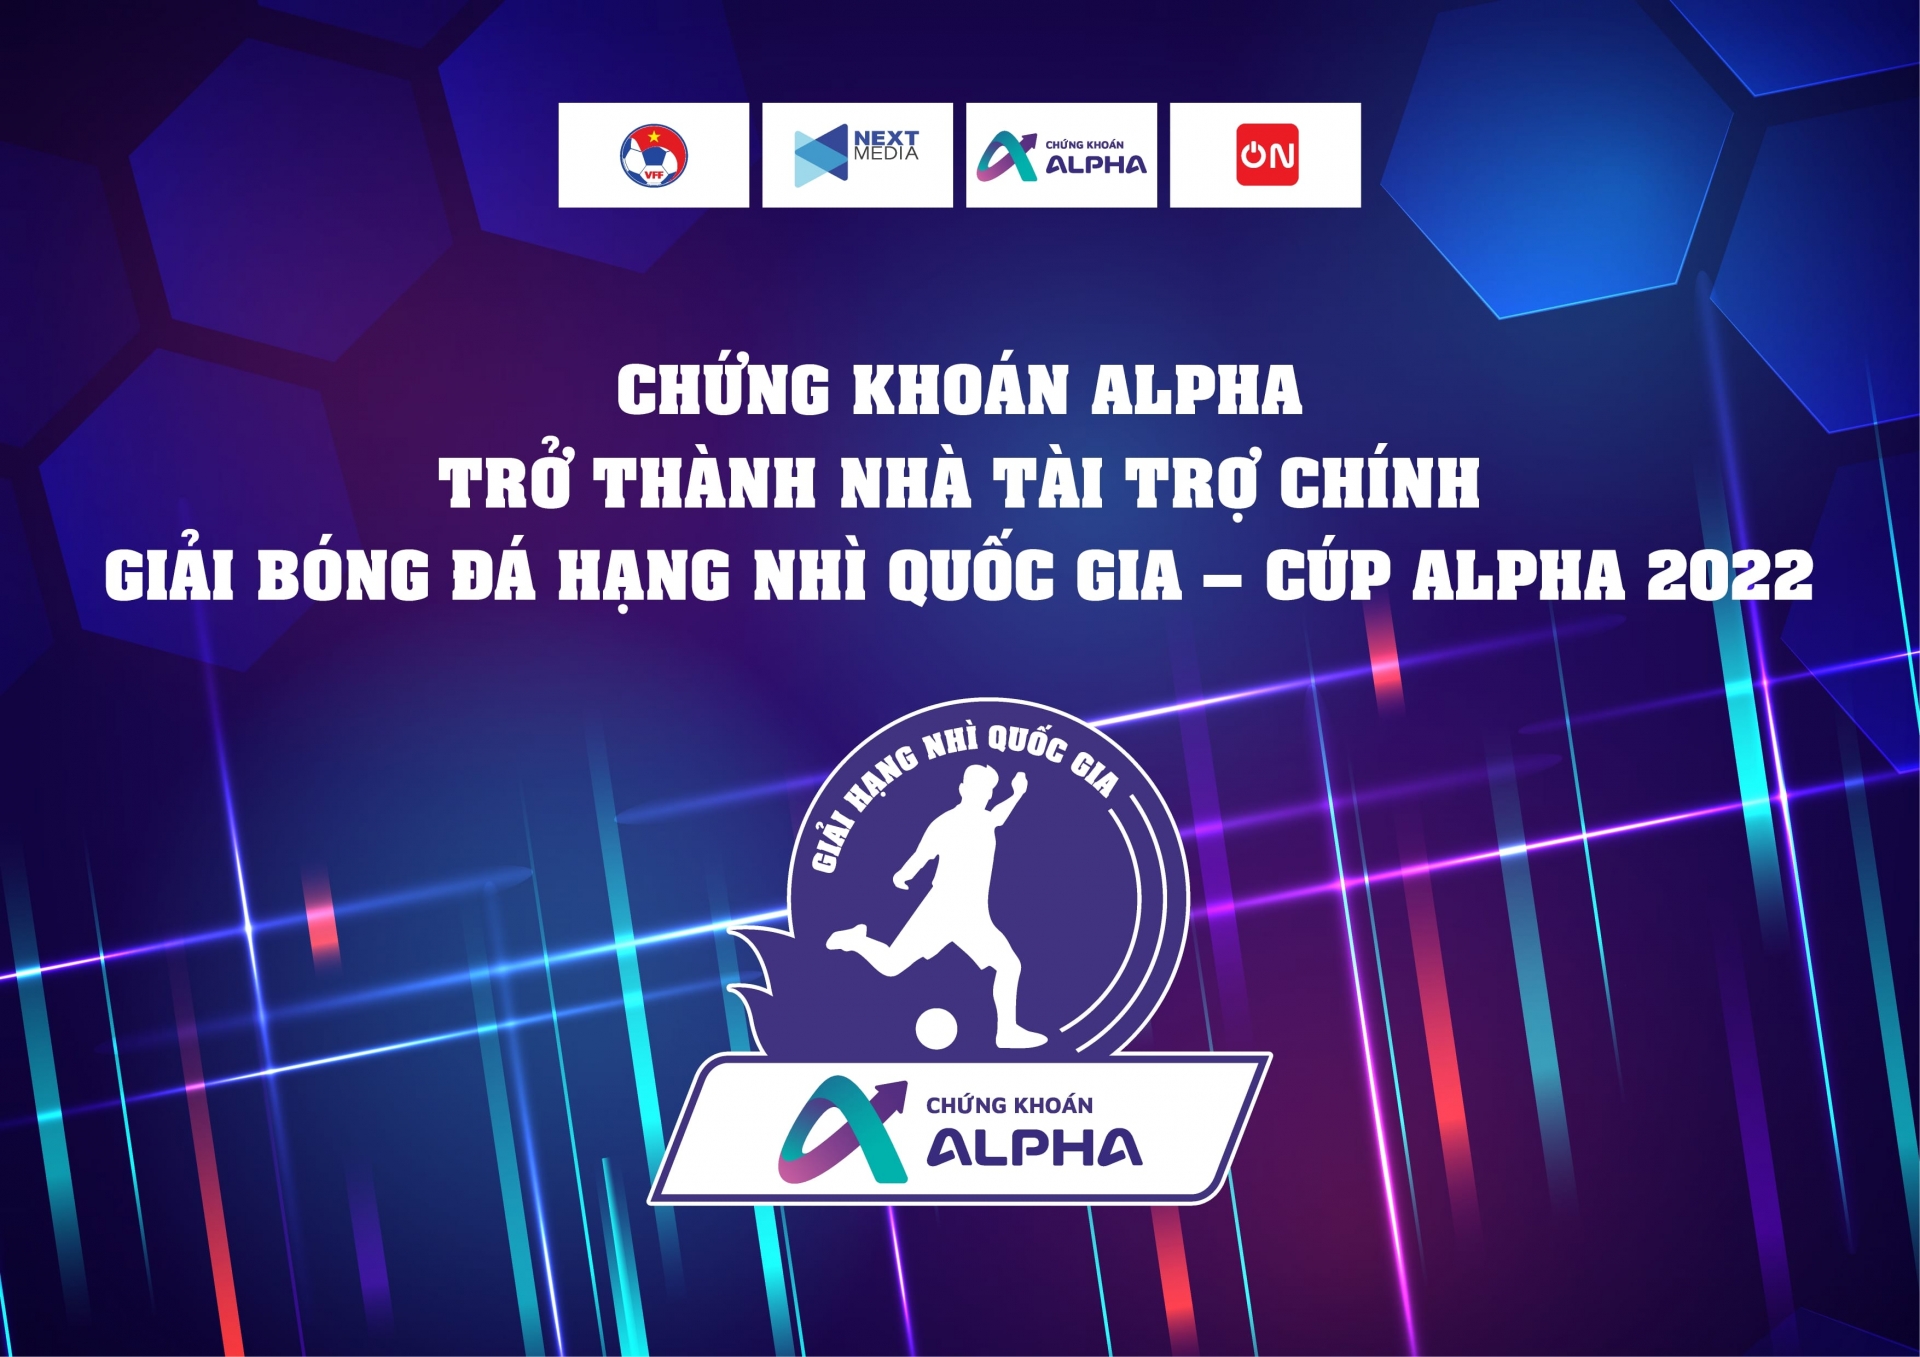 Chứng khoán Alpha trở thành nhà tài trợ chính Giải bóng đá hạng nhì Quốc gia - Cup Alpha 2022